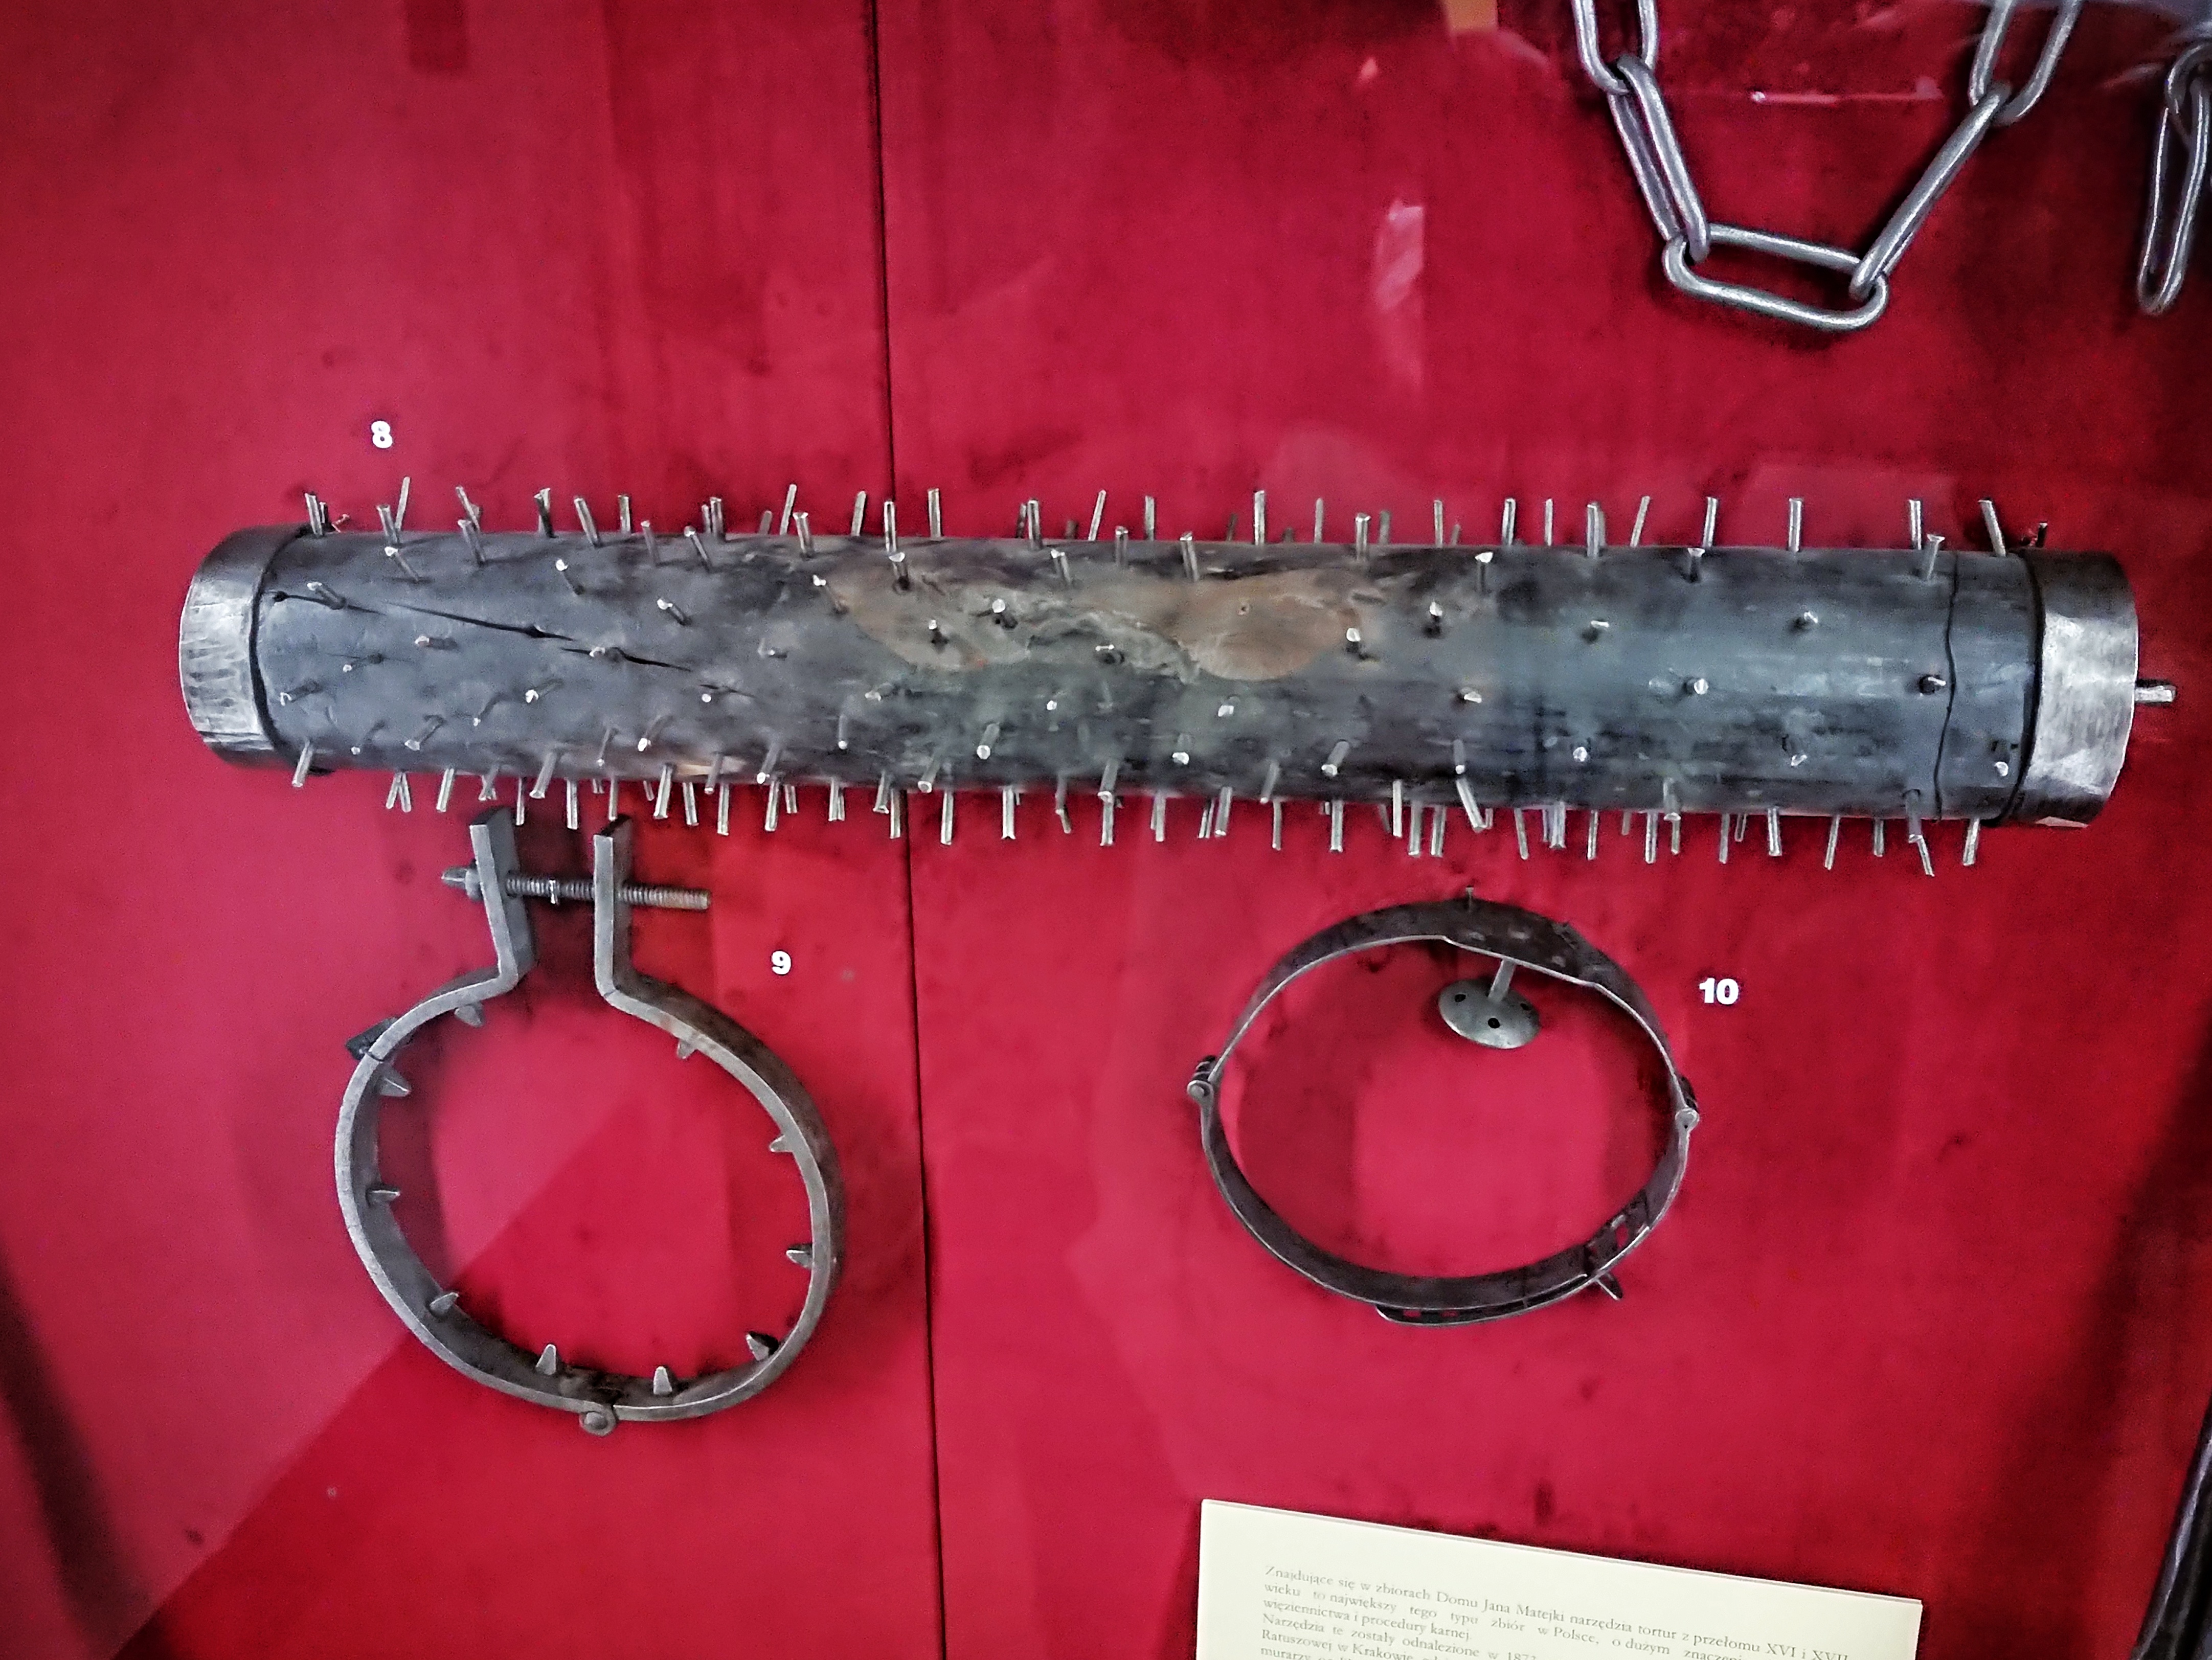 Narzędzia tortur na ekspozycji w Domu Jana Matejki, źródło: archiwum autorki